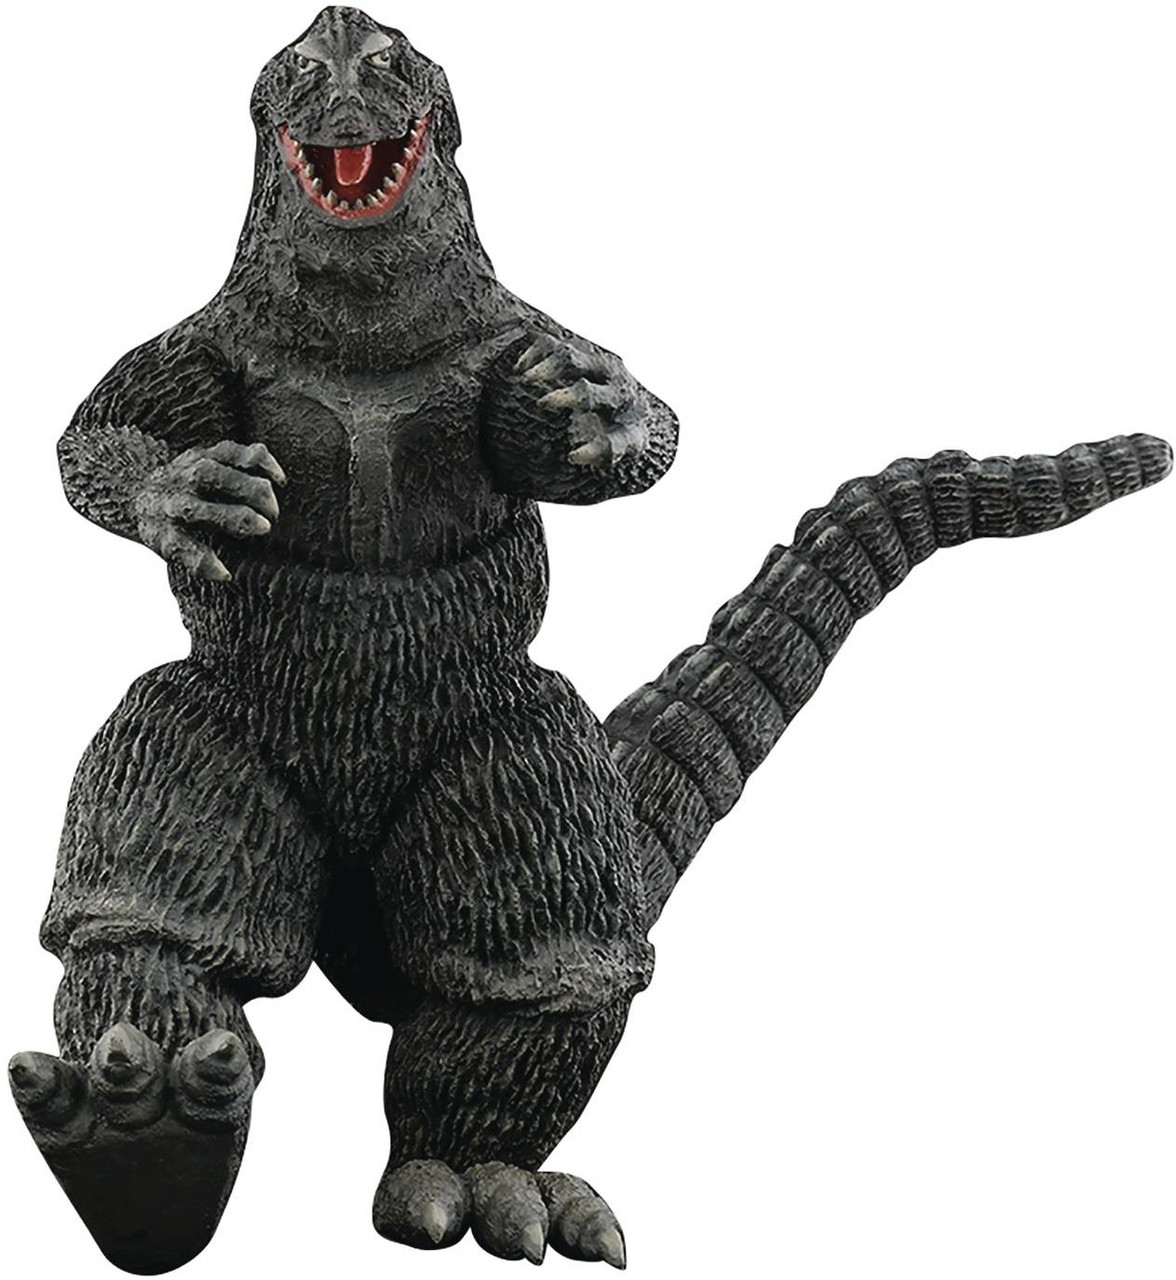 King Kong Vs Godzilla Godzilla 11 Pvc Collectible Statue 1962 X Plus Usa Toywiz - king kong vs godzilla roleplay roblox